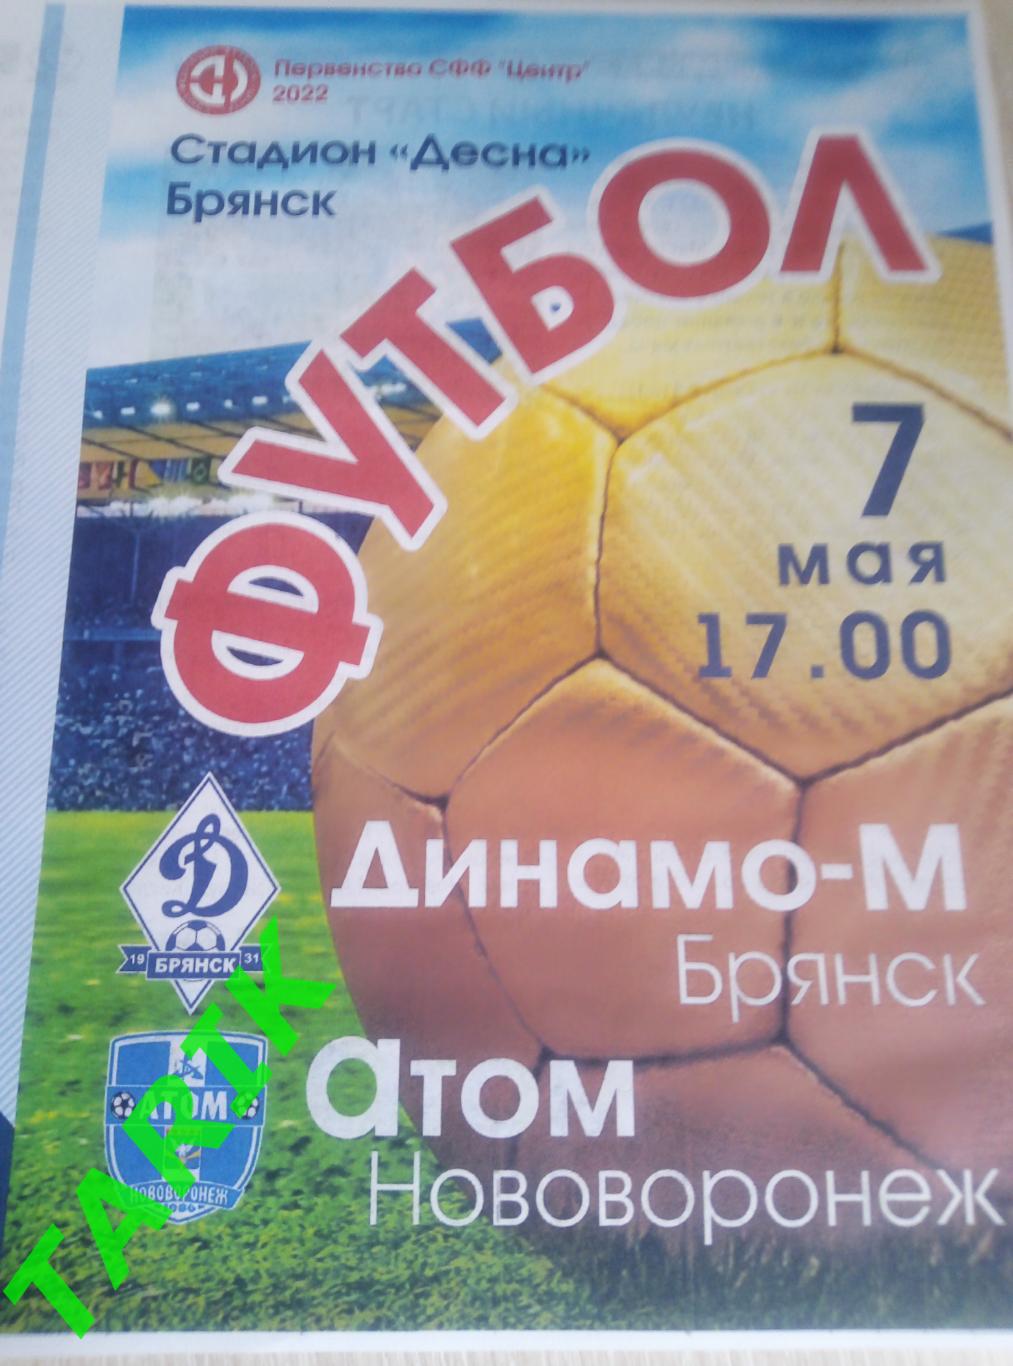 Динамо М Брянск - Атом Нововоронеж 7.05.2022 официальная